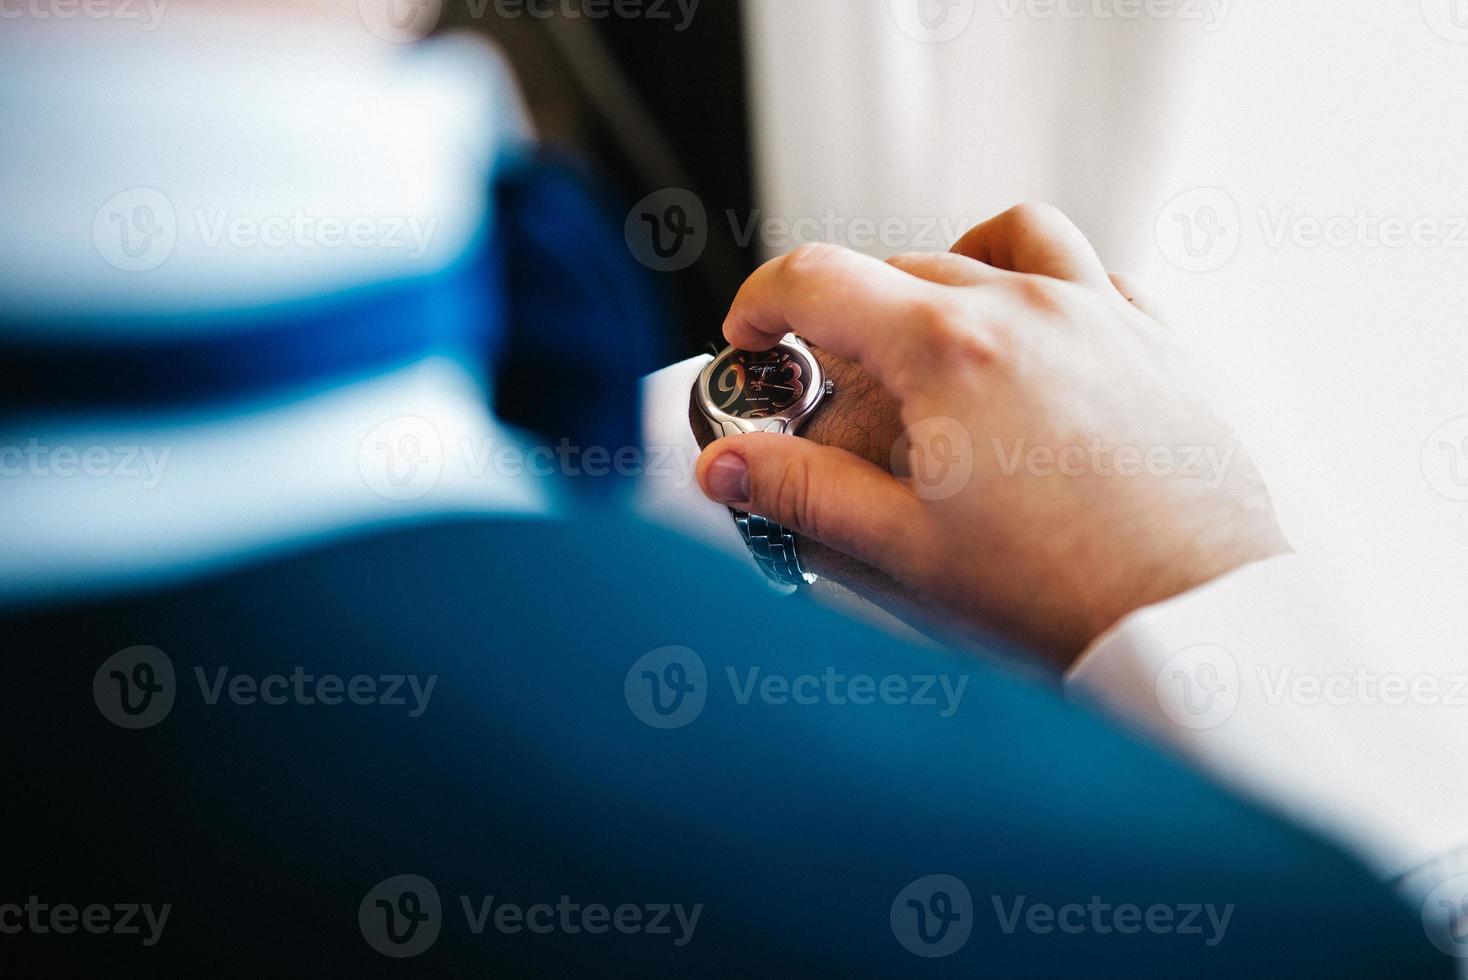 lo sposo in abito blu guarda l'orologio indossato alla mano sinistra foto